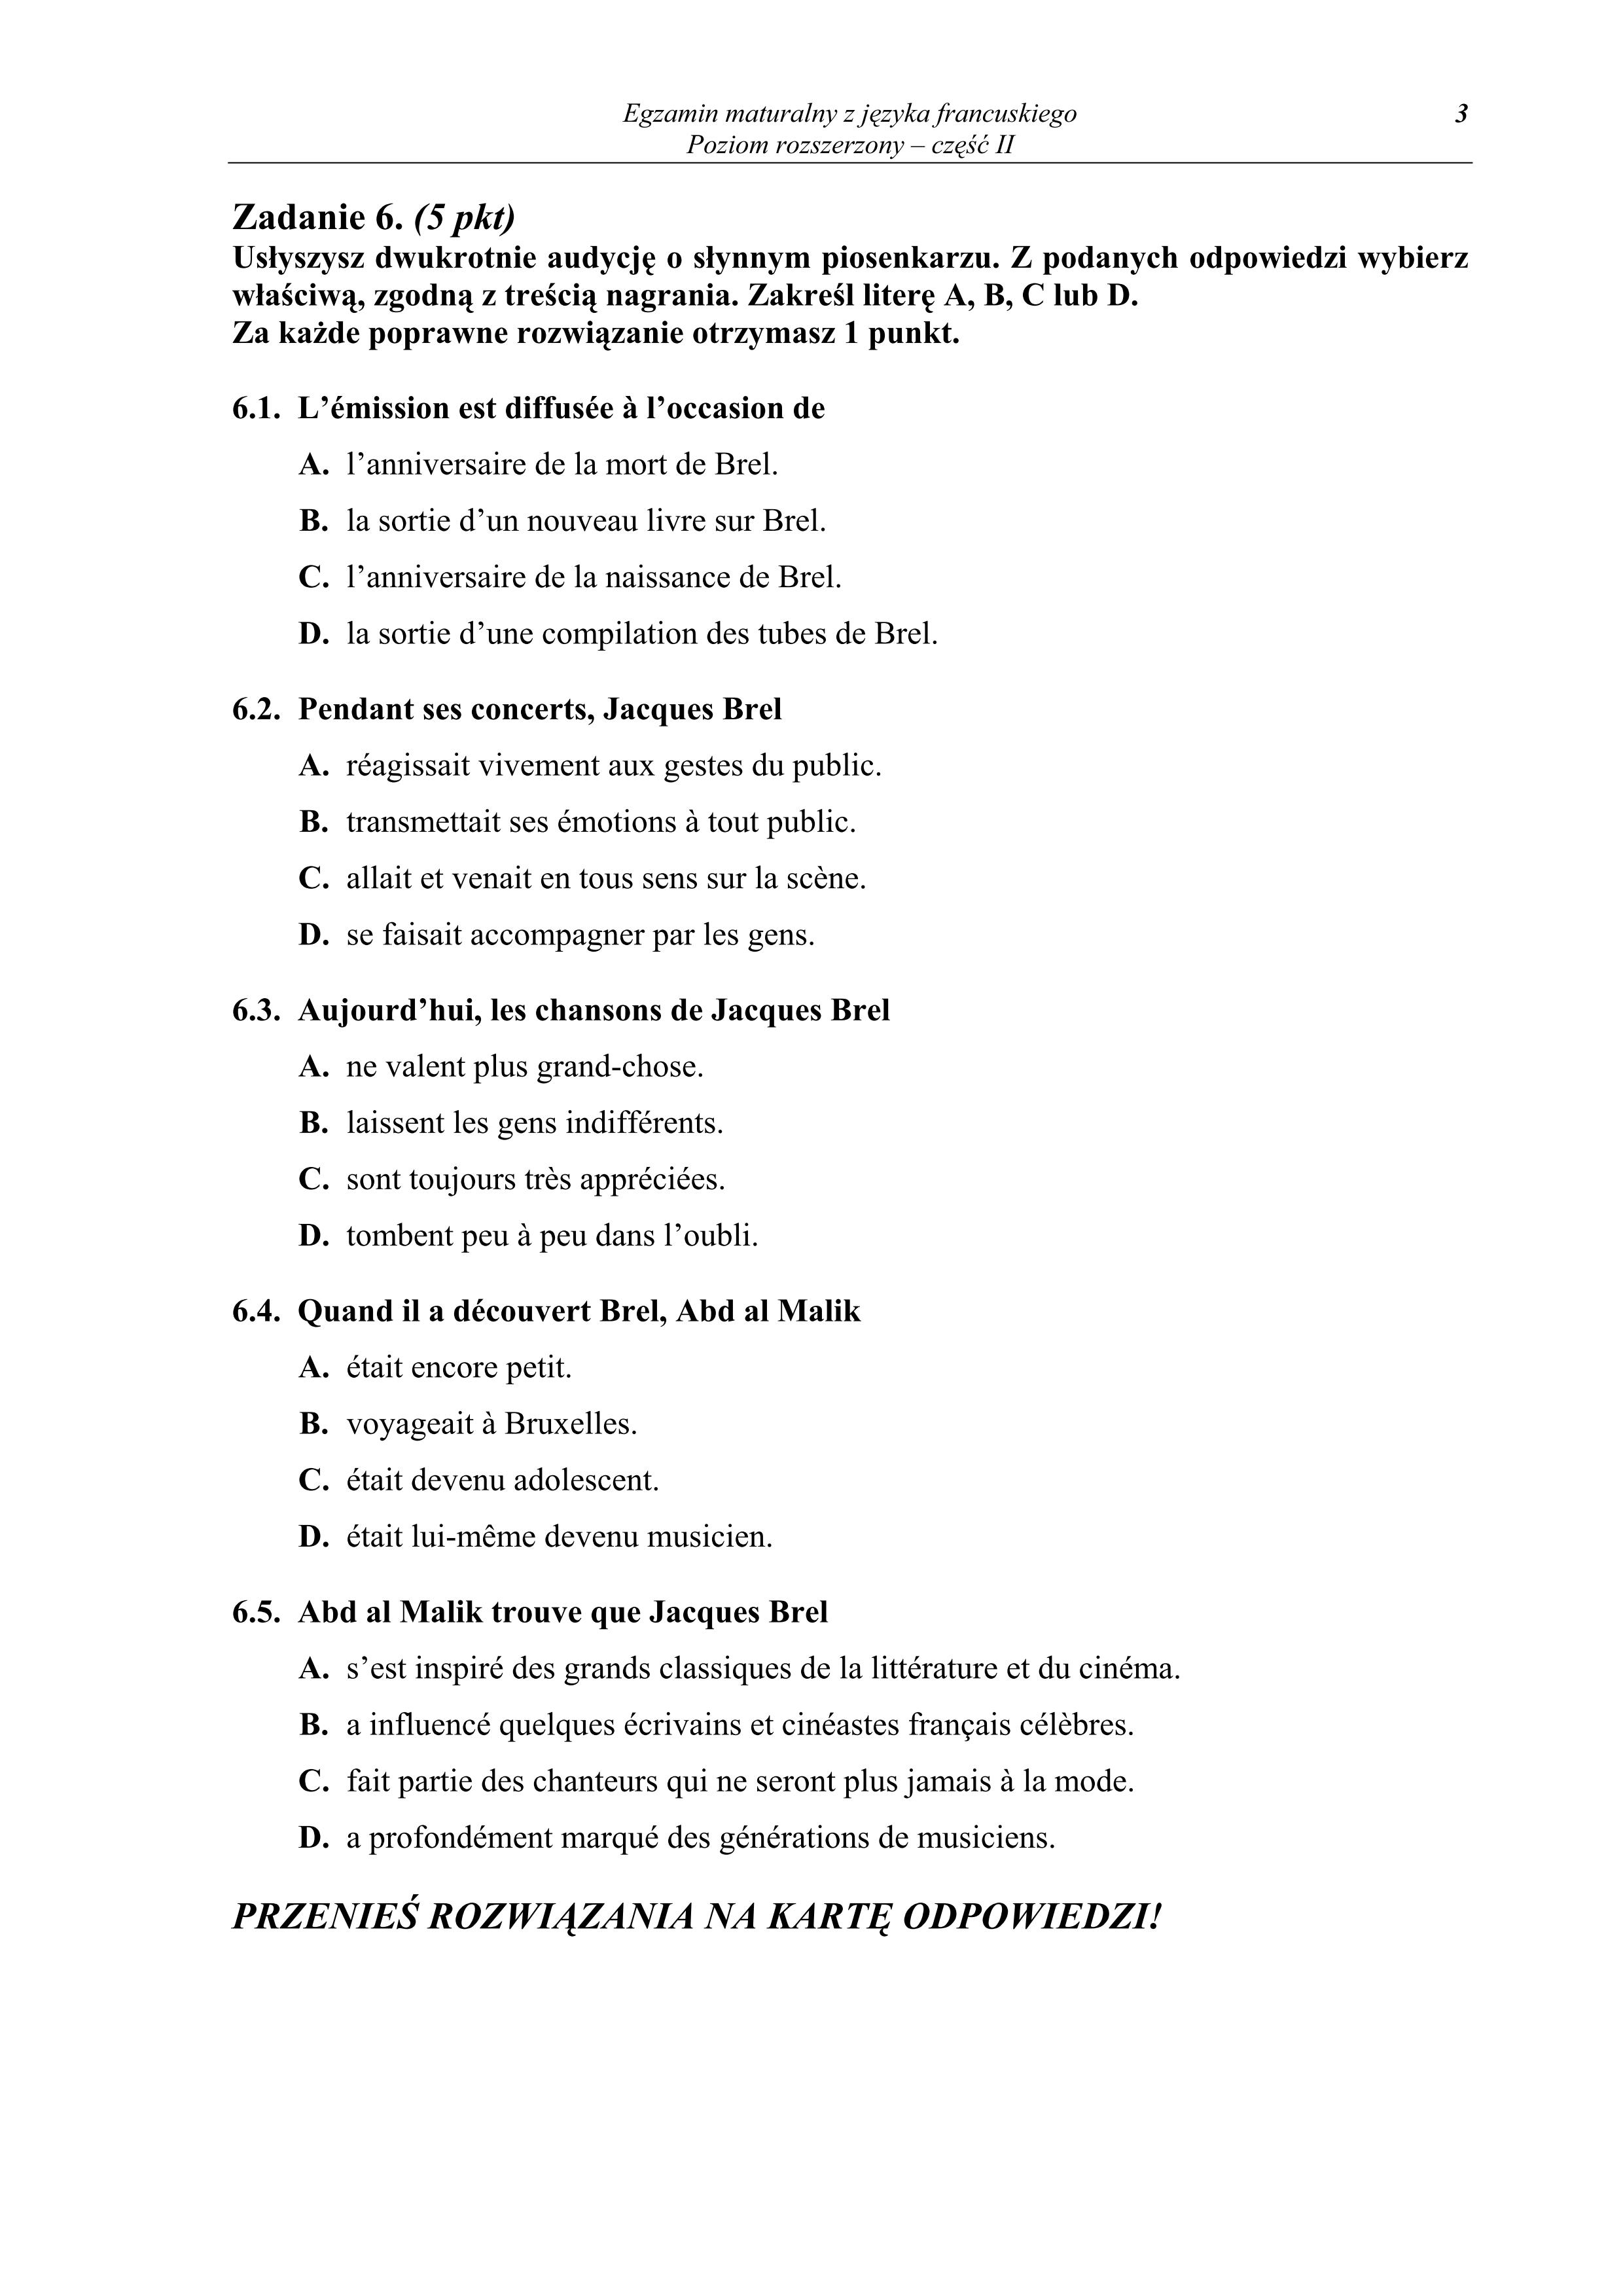 pytania-jezyk-francuski-poziom-rozszerzony-matura-2011-cz2 - 3